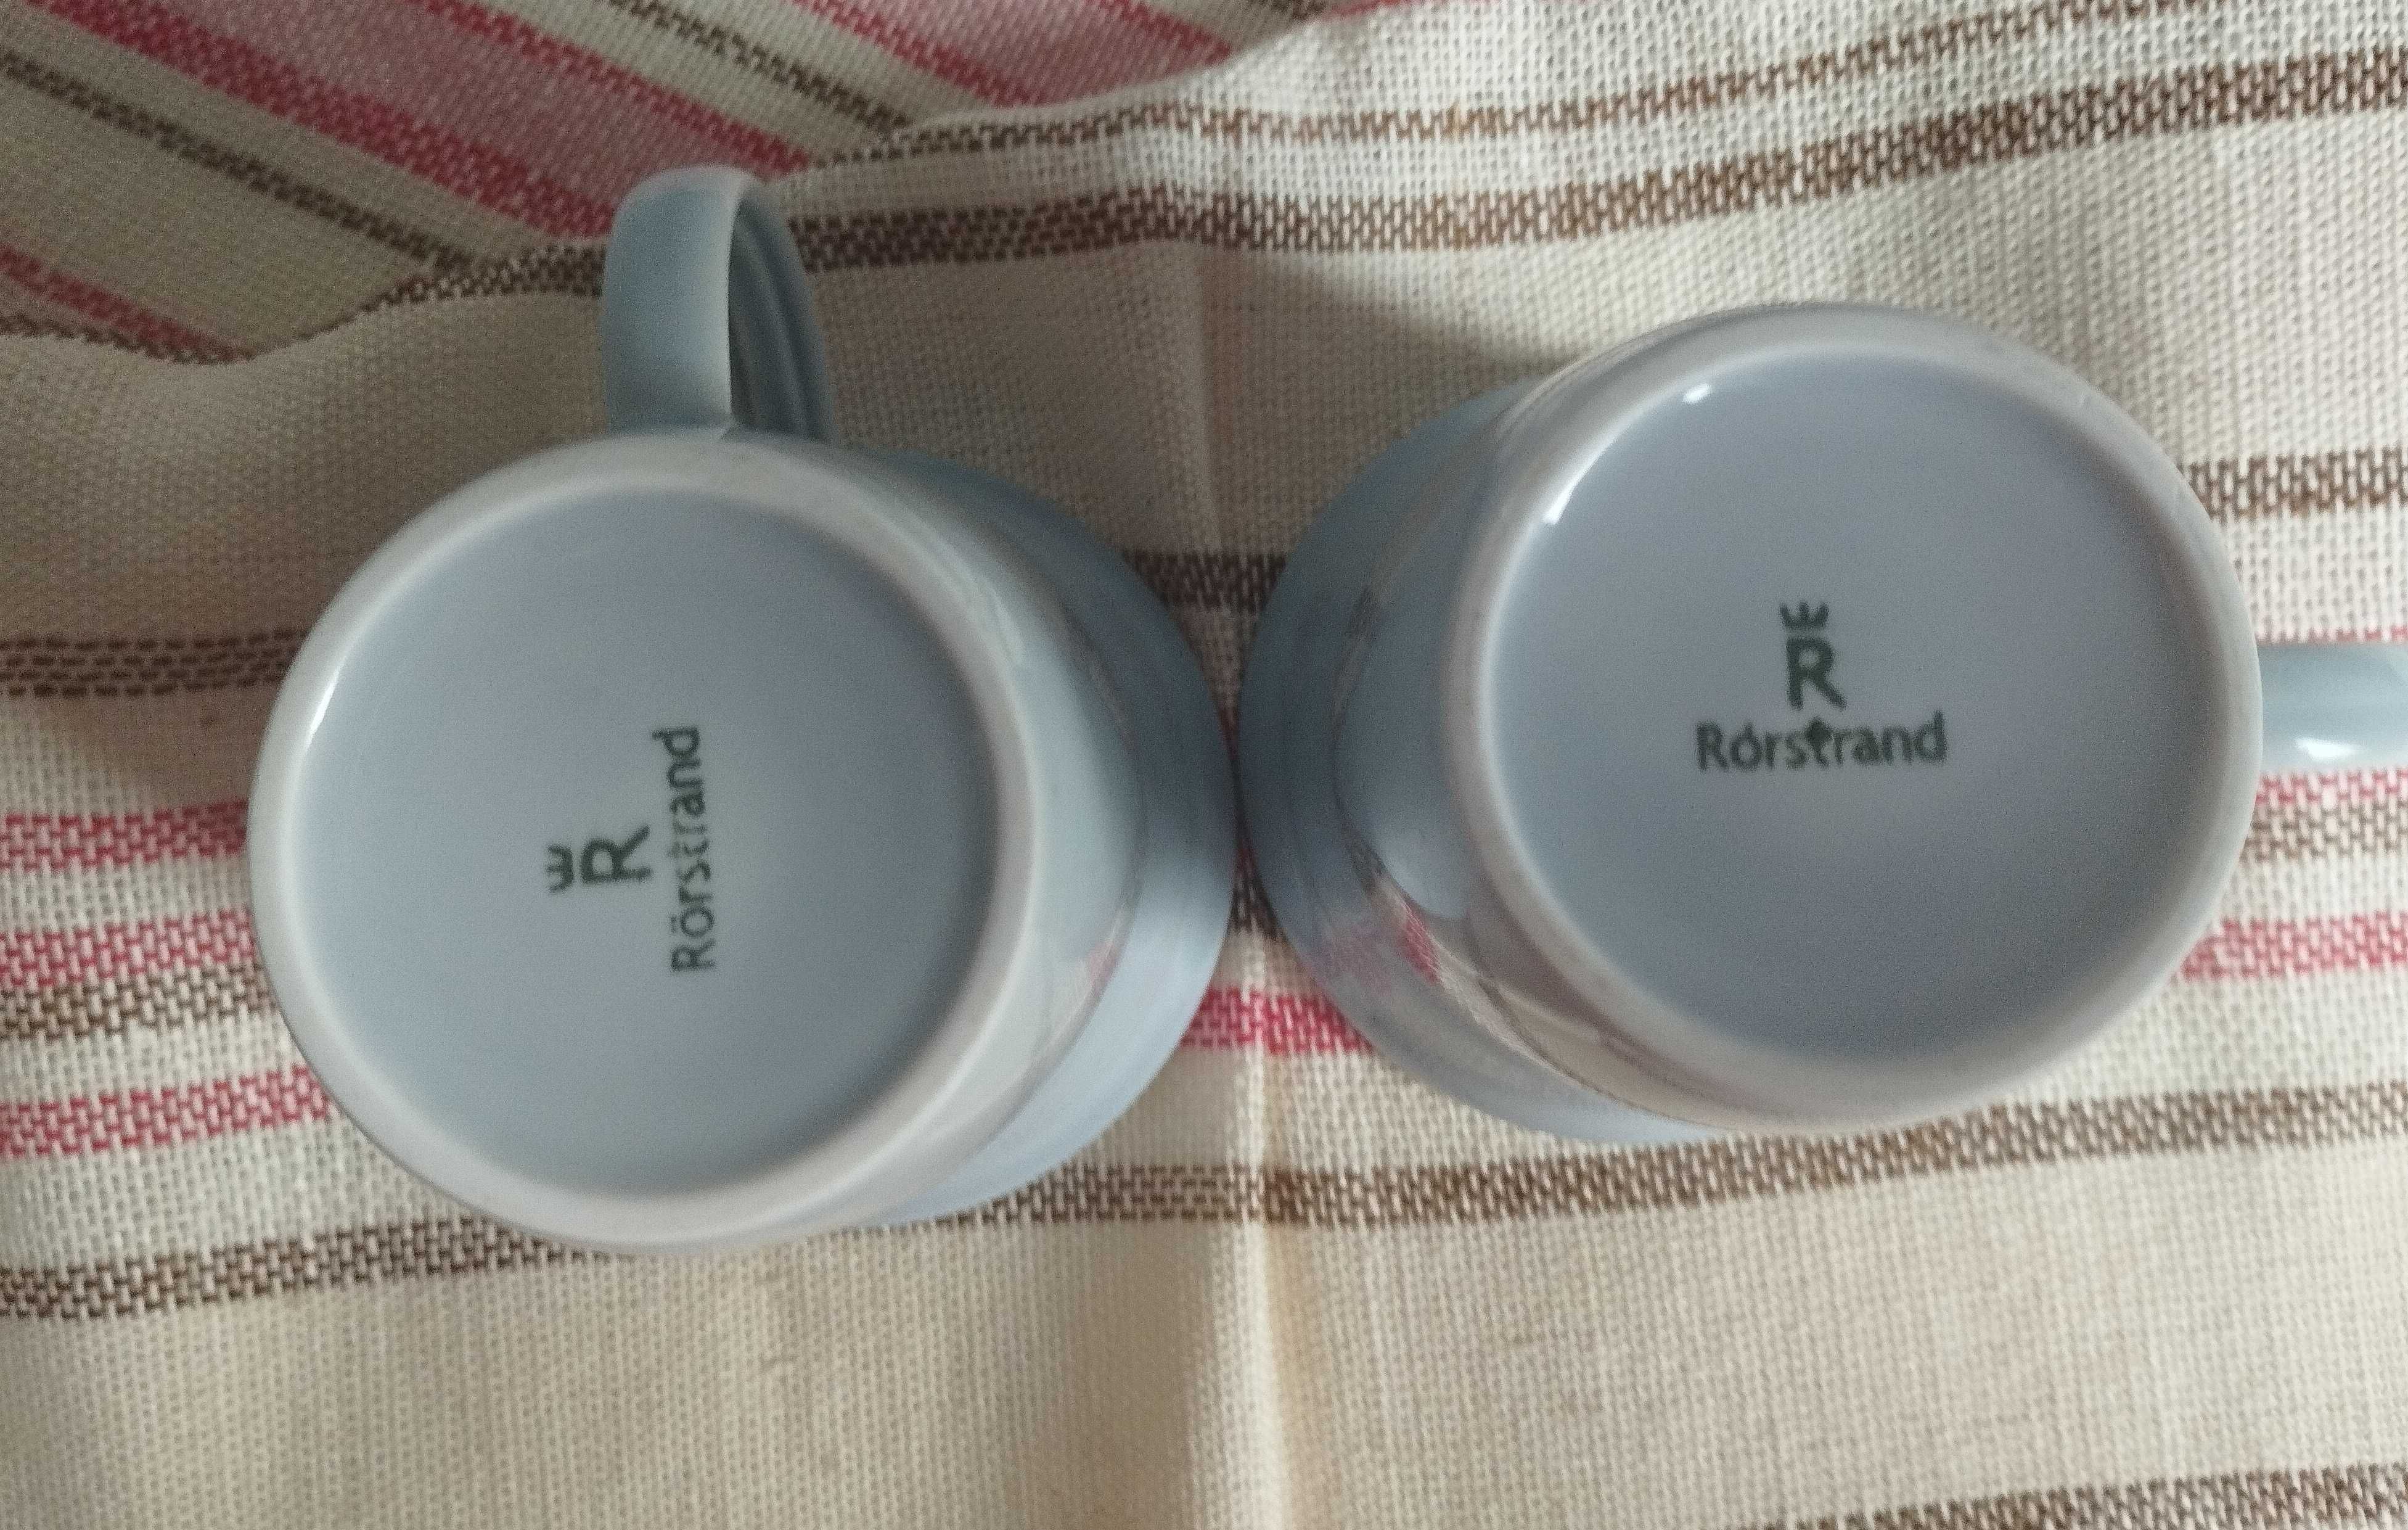 Dwa nowe szare kubeczki do kawy herbaty firmy Rorstrand Sweden.